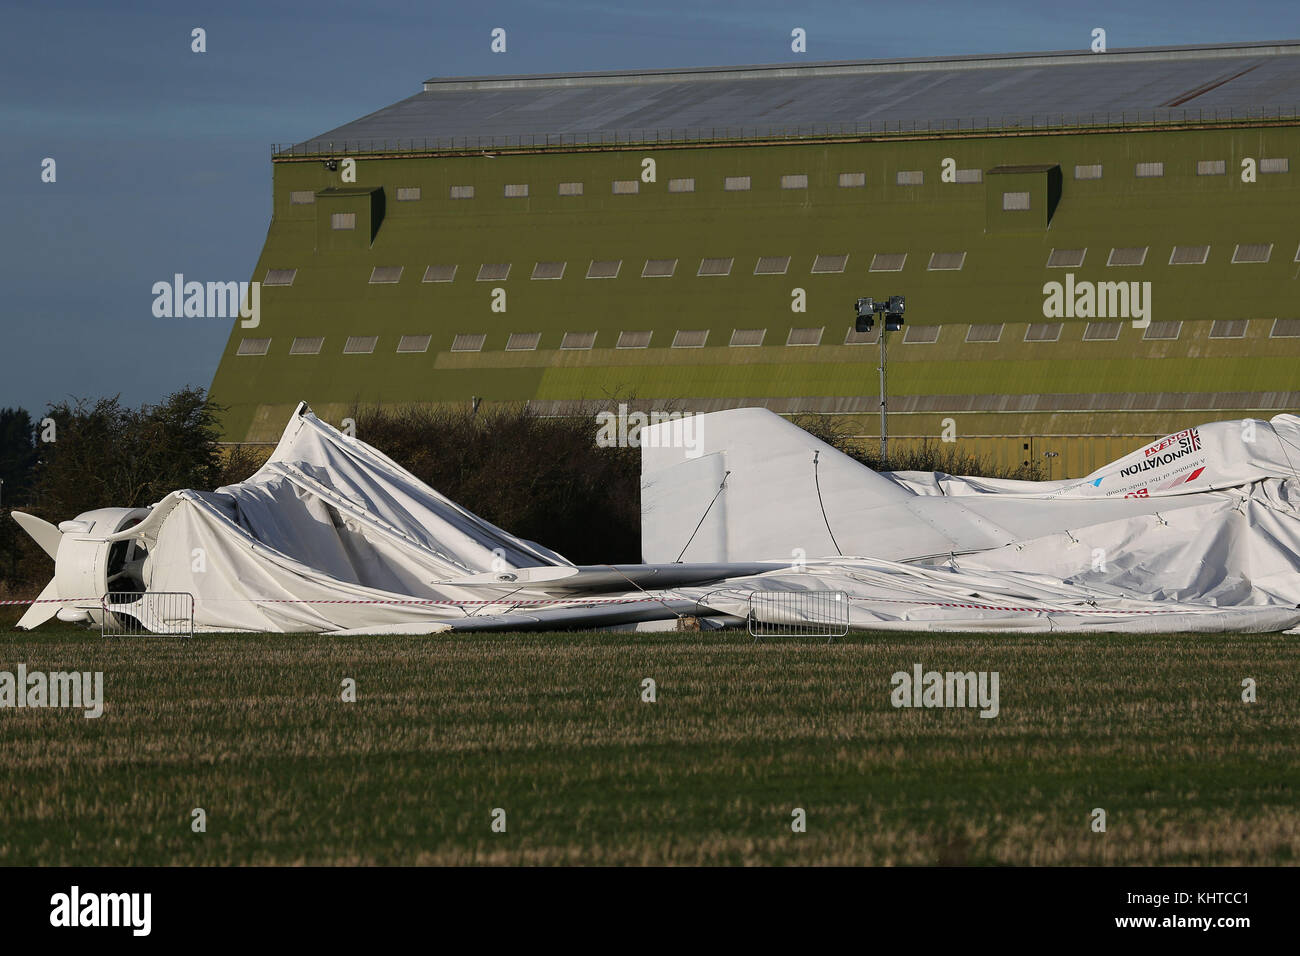 Airlander 10, il più grande velivolo del mondo, si trova a terra presso il campo aereo di Cardington nel Bedfordshire, dopo che l'aereo si è sciolto dai suoi ormeggi causando il suo scafo a strappare e sgonfiarsi. Foto Stock